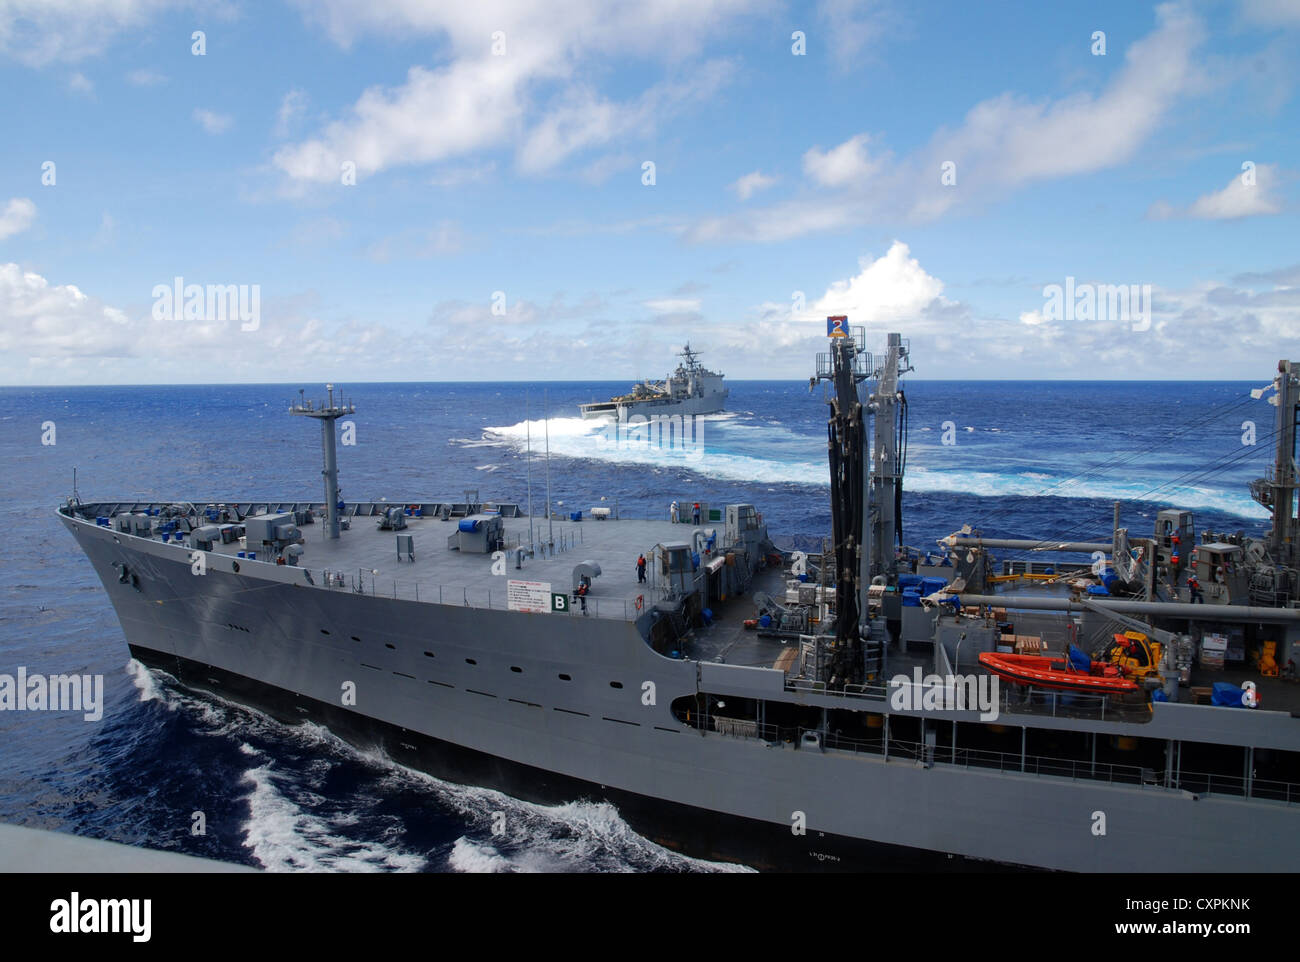 Amphibische Landung dock Schiff USS Rushmore (LSD 47) zieht weg von Flotte Auffüllung öler USNS Johannes Ericksson (T-AO-194) nach Abschluss eines unterwegs Nachschub. Rushmore ist Teil der Peleliu Amphibious Ready Gruppe derzeit auf einer Bereitstellung mit Amphibisches Schiff USS Peleliu (LHA 5) und amphibious Transport dock Schiff USS Green Bay LPD (20). Stockfoto